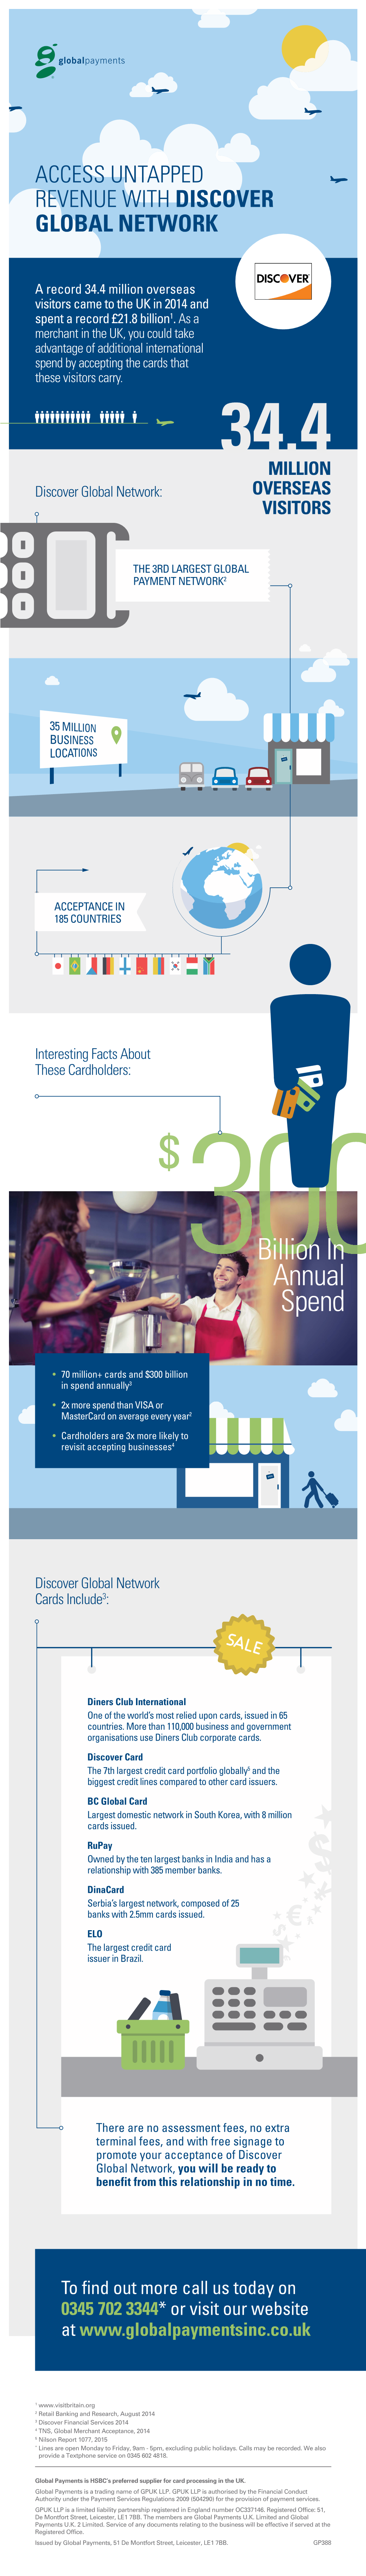 3003Billion in Annual Spend